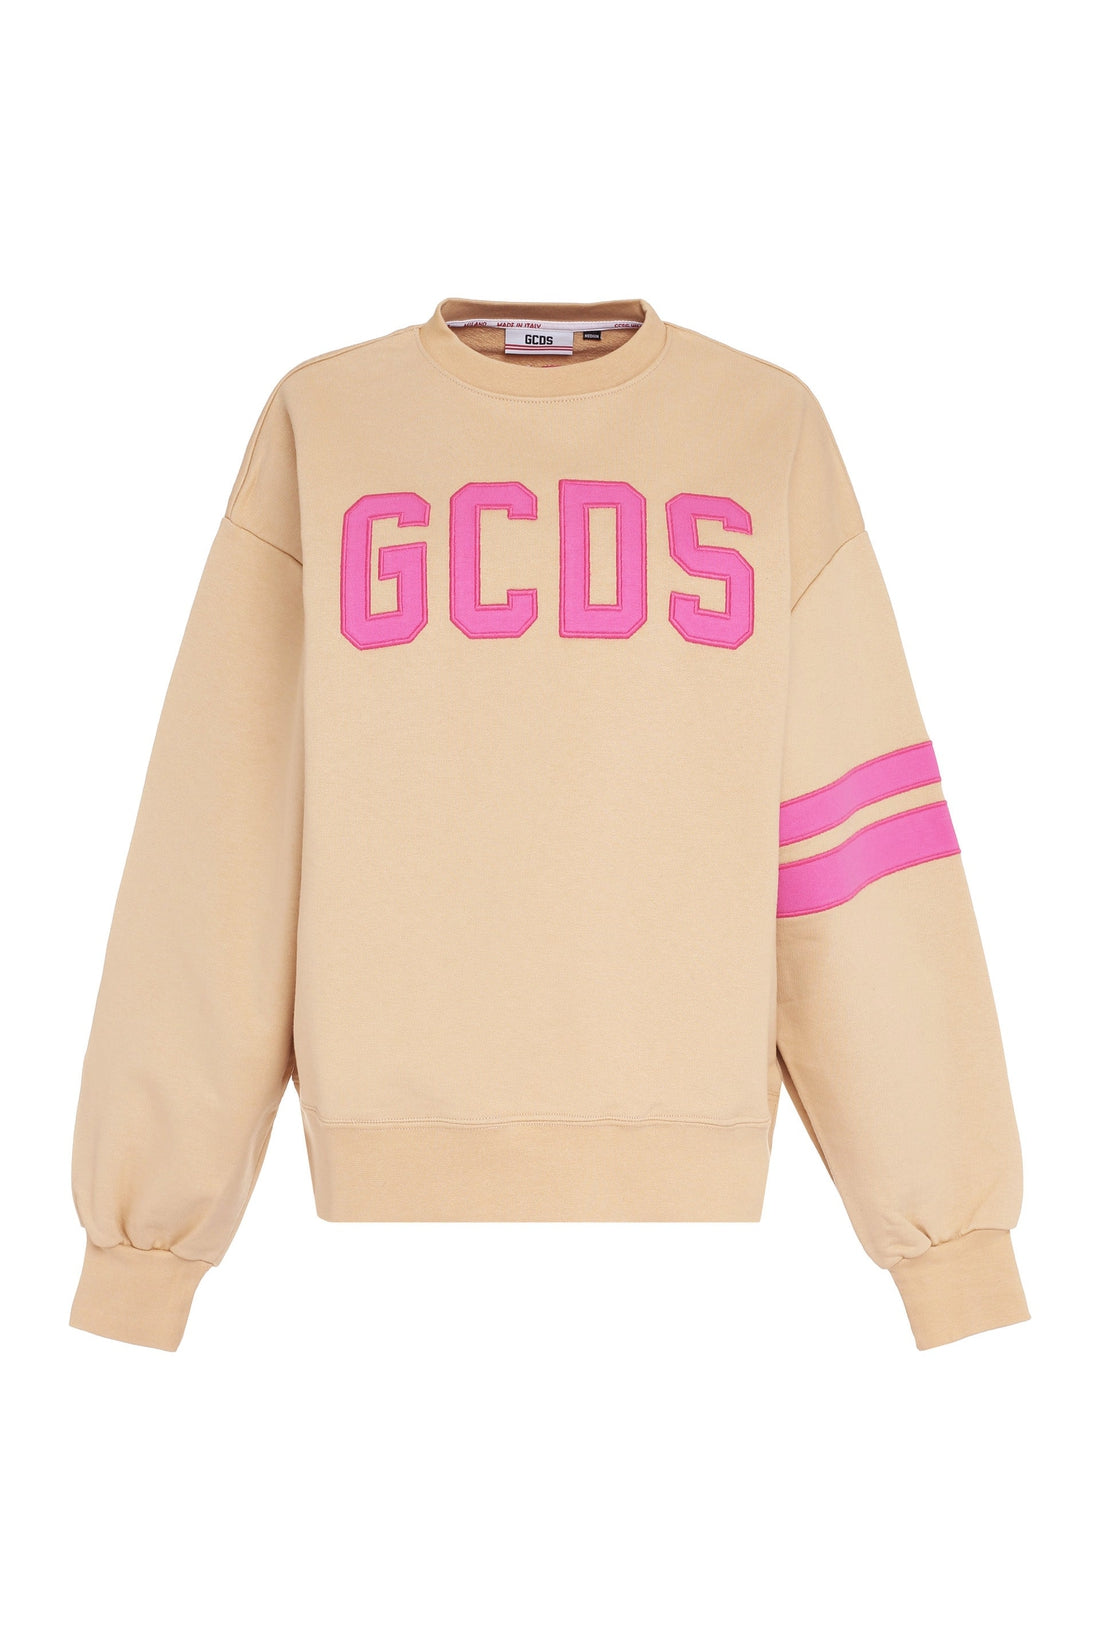 GCDS-OUTLET-SALE-Cotton crew-neck sweatshirt-ARCHIVIST